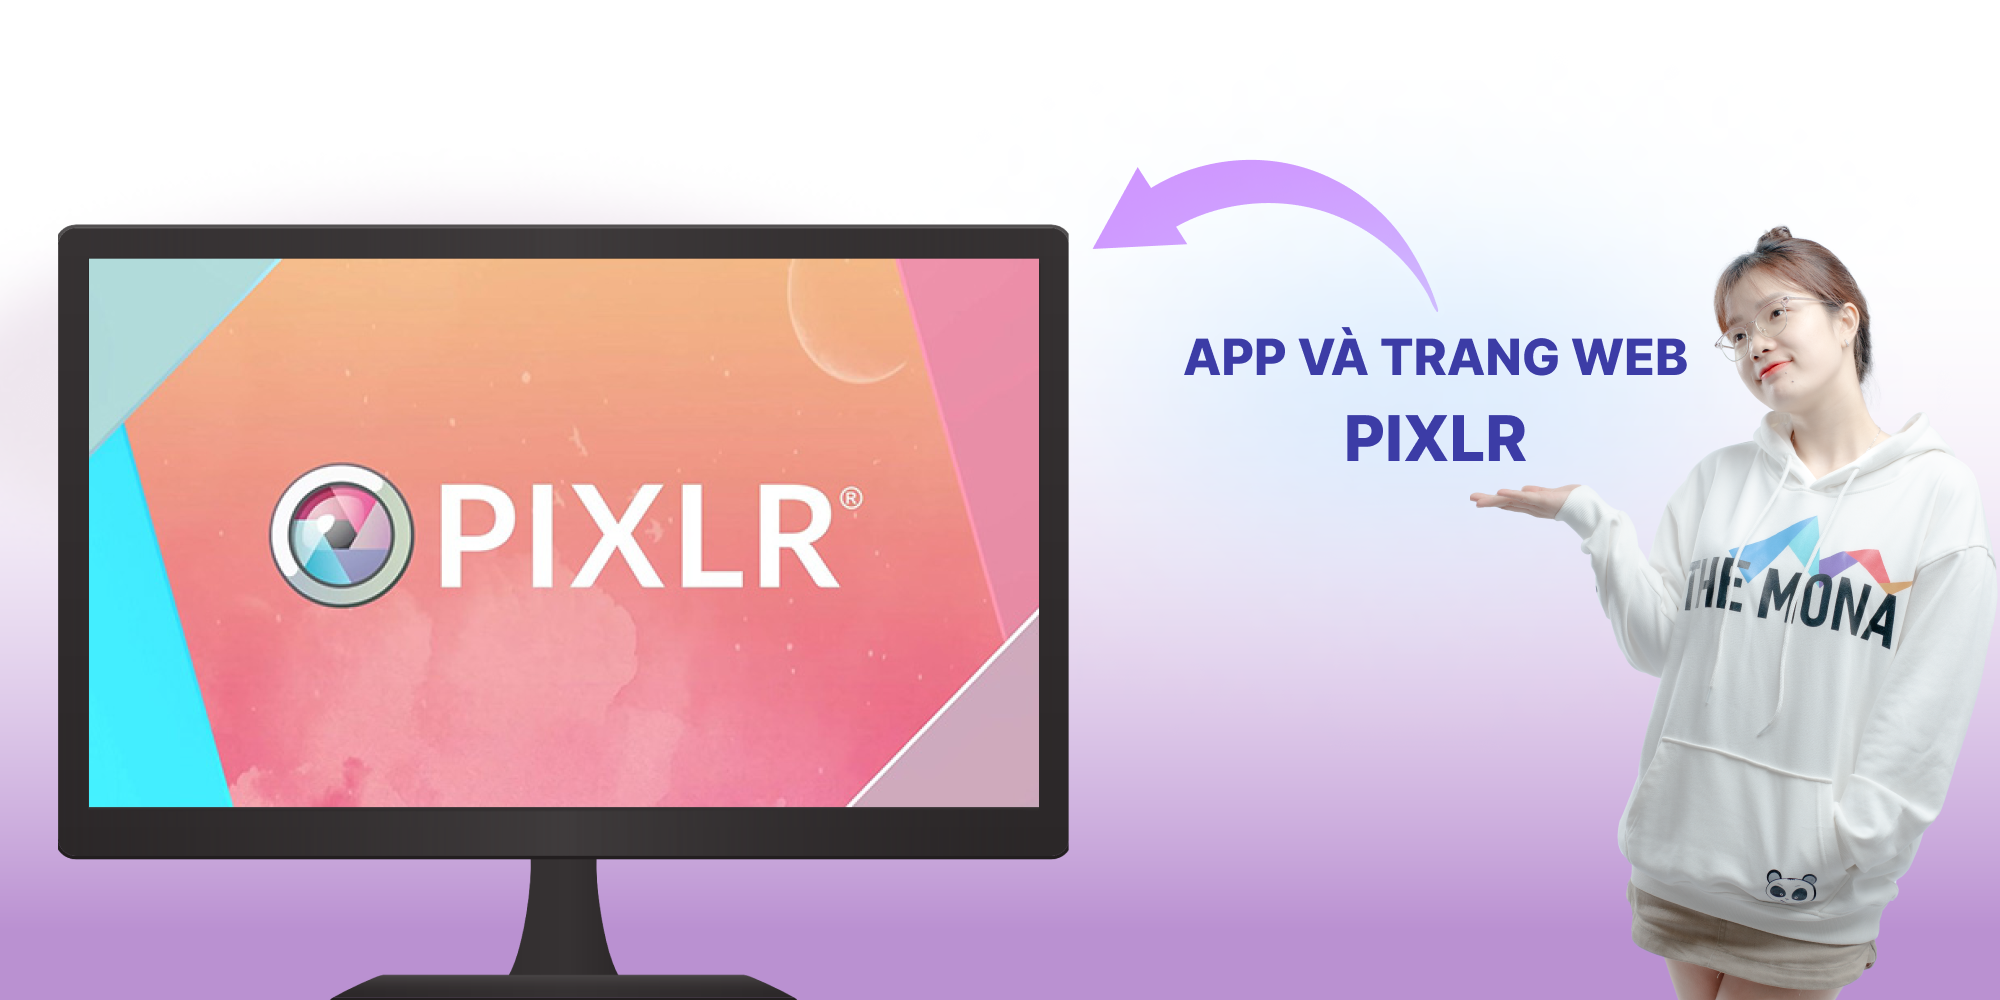 App và trang web PIXLR